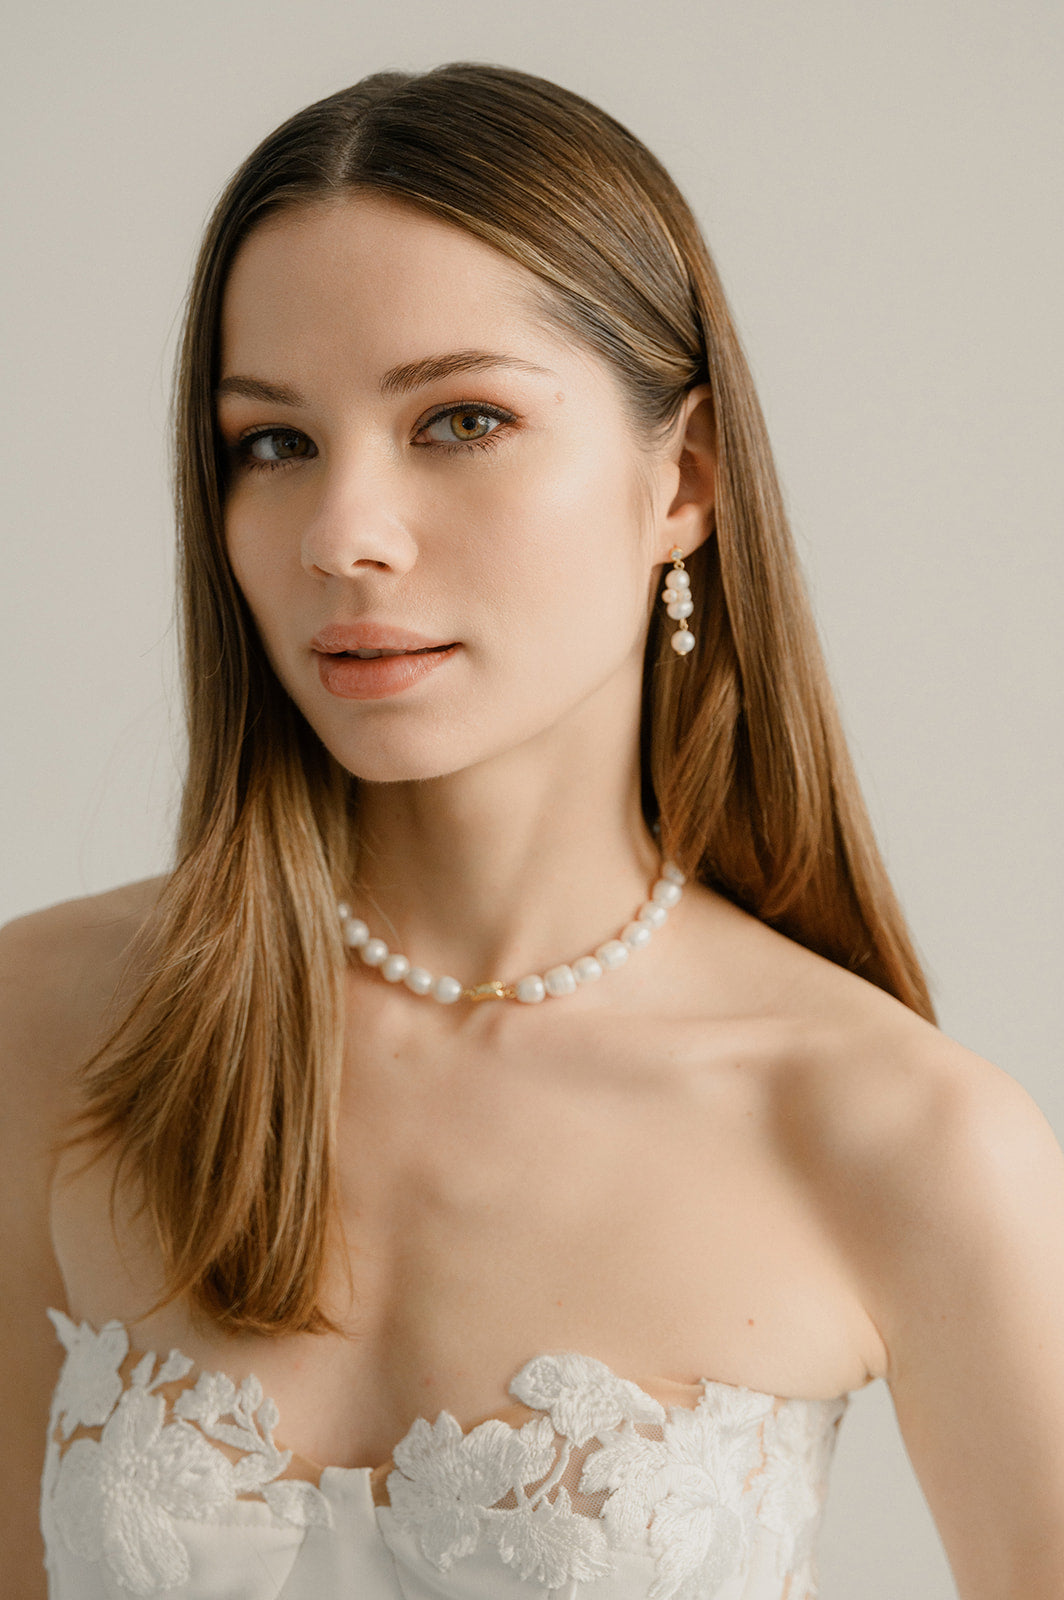 jeune femme de face qui porte des boucles d'oreilles en perles naturelles et un collier qui est similaire